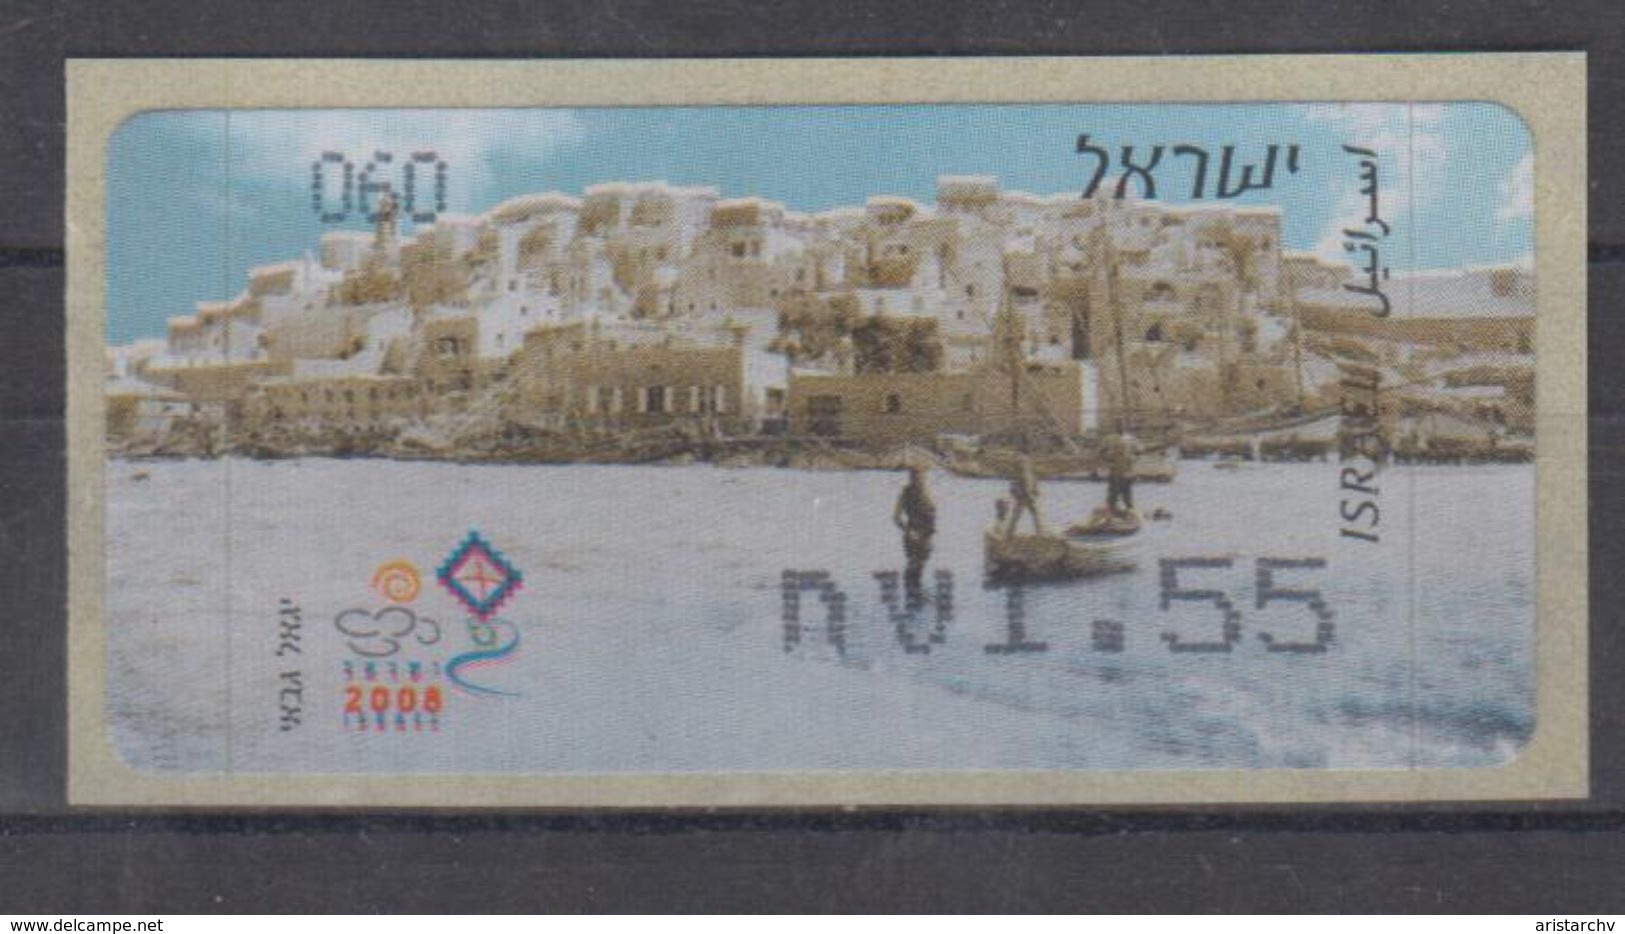 ISRAEL 2008 KLUSSENDORF ATM TEL AVIV YAFO NUMBER 060 - Vignettes D'affranchissement (Frama)